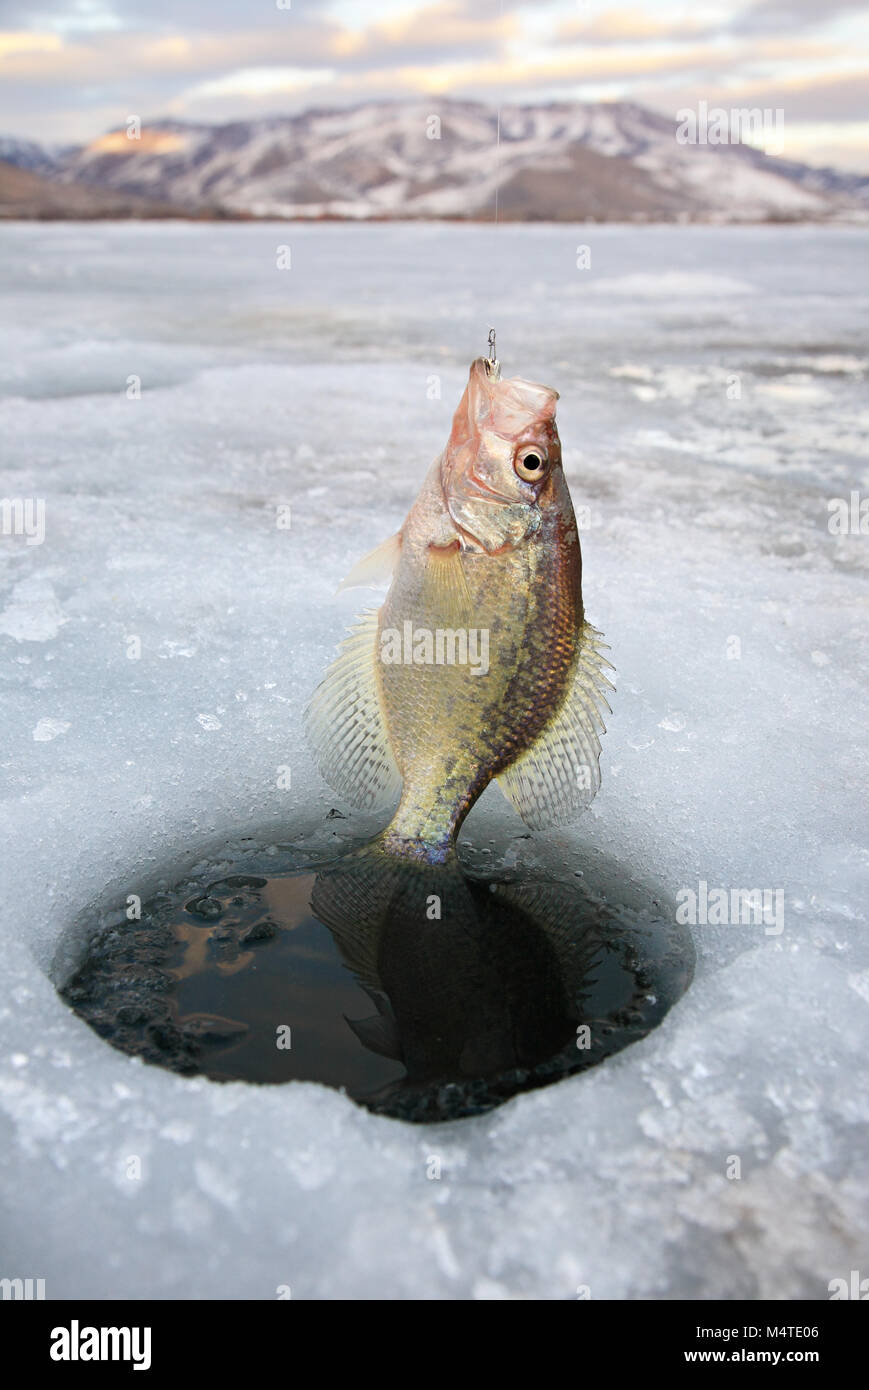 Le crapet pan fish étant sorti de trou dans la glace dans le Nord de l'Utah Banque D'Images